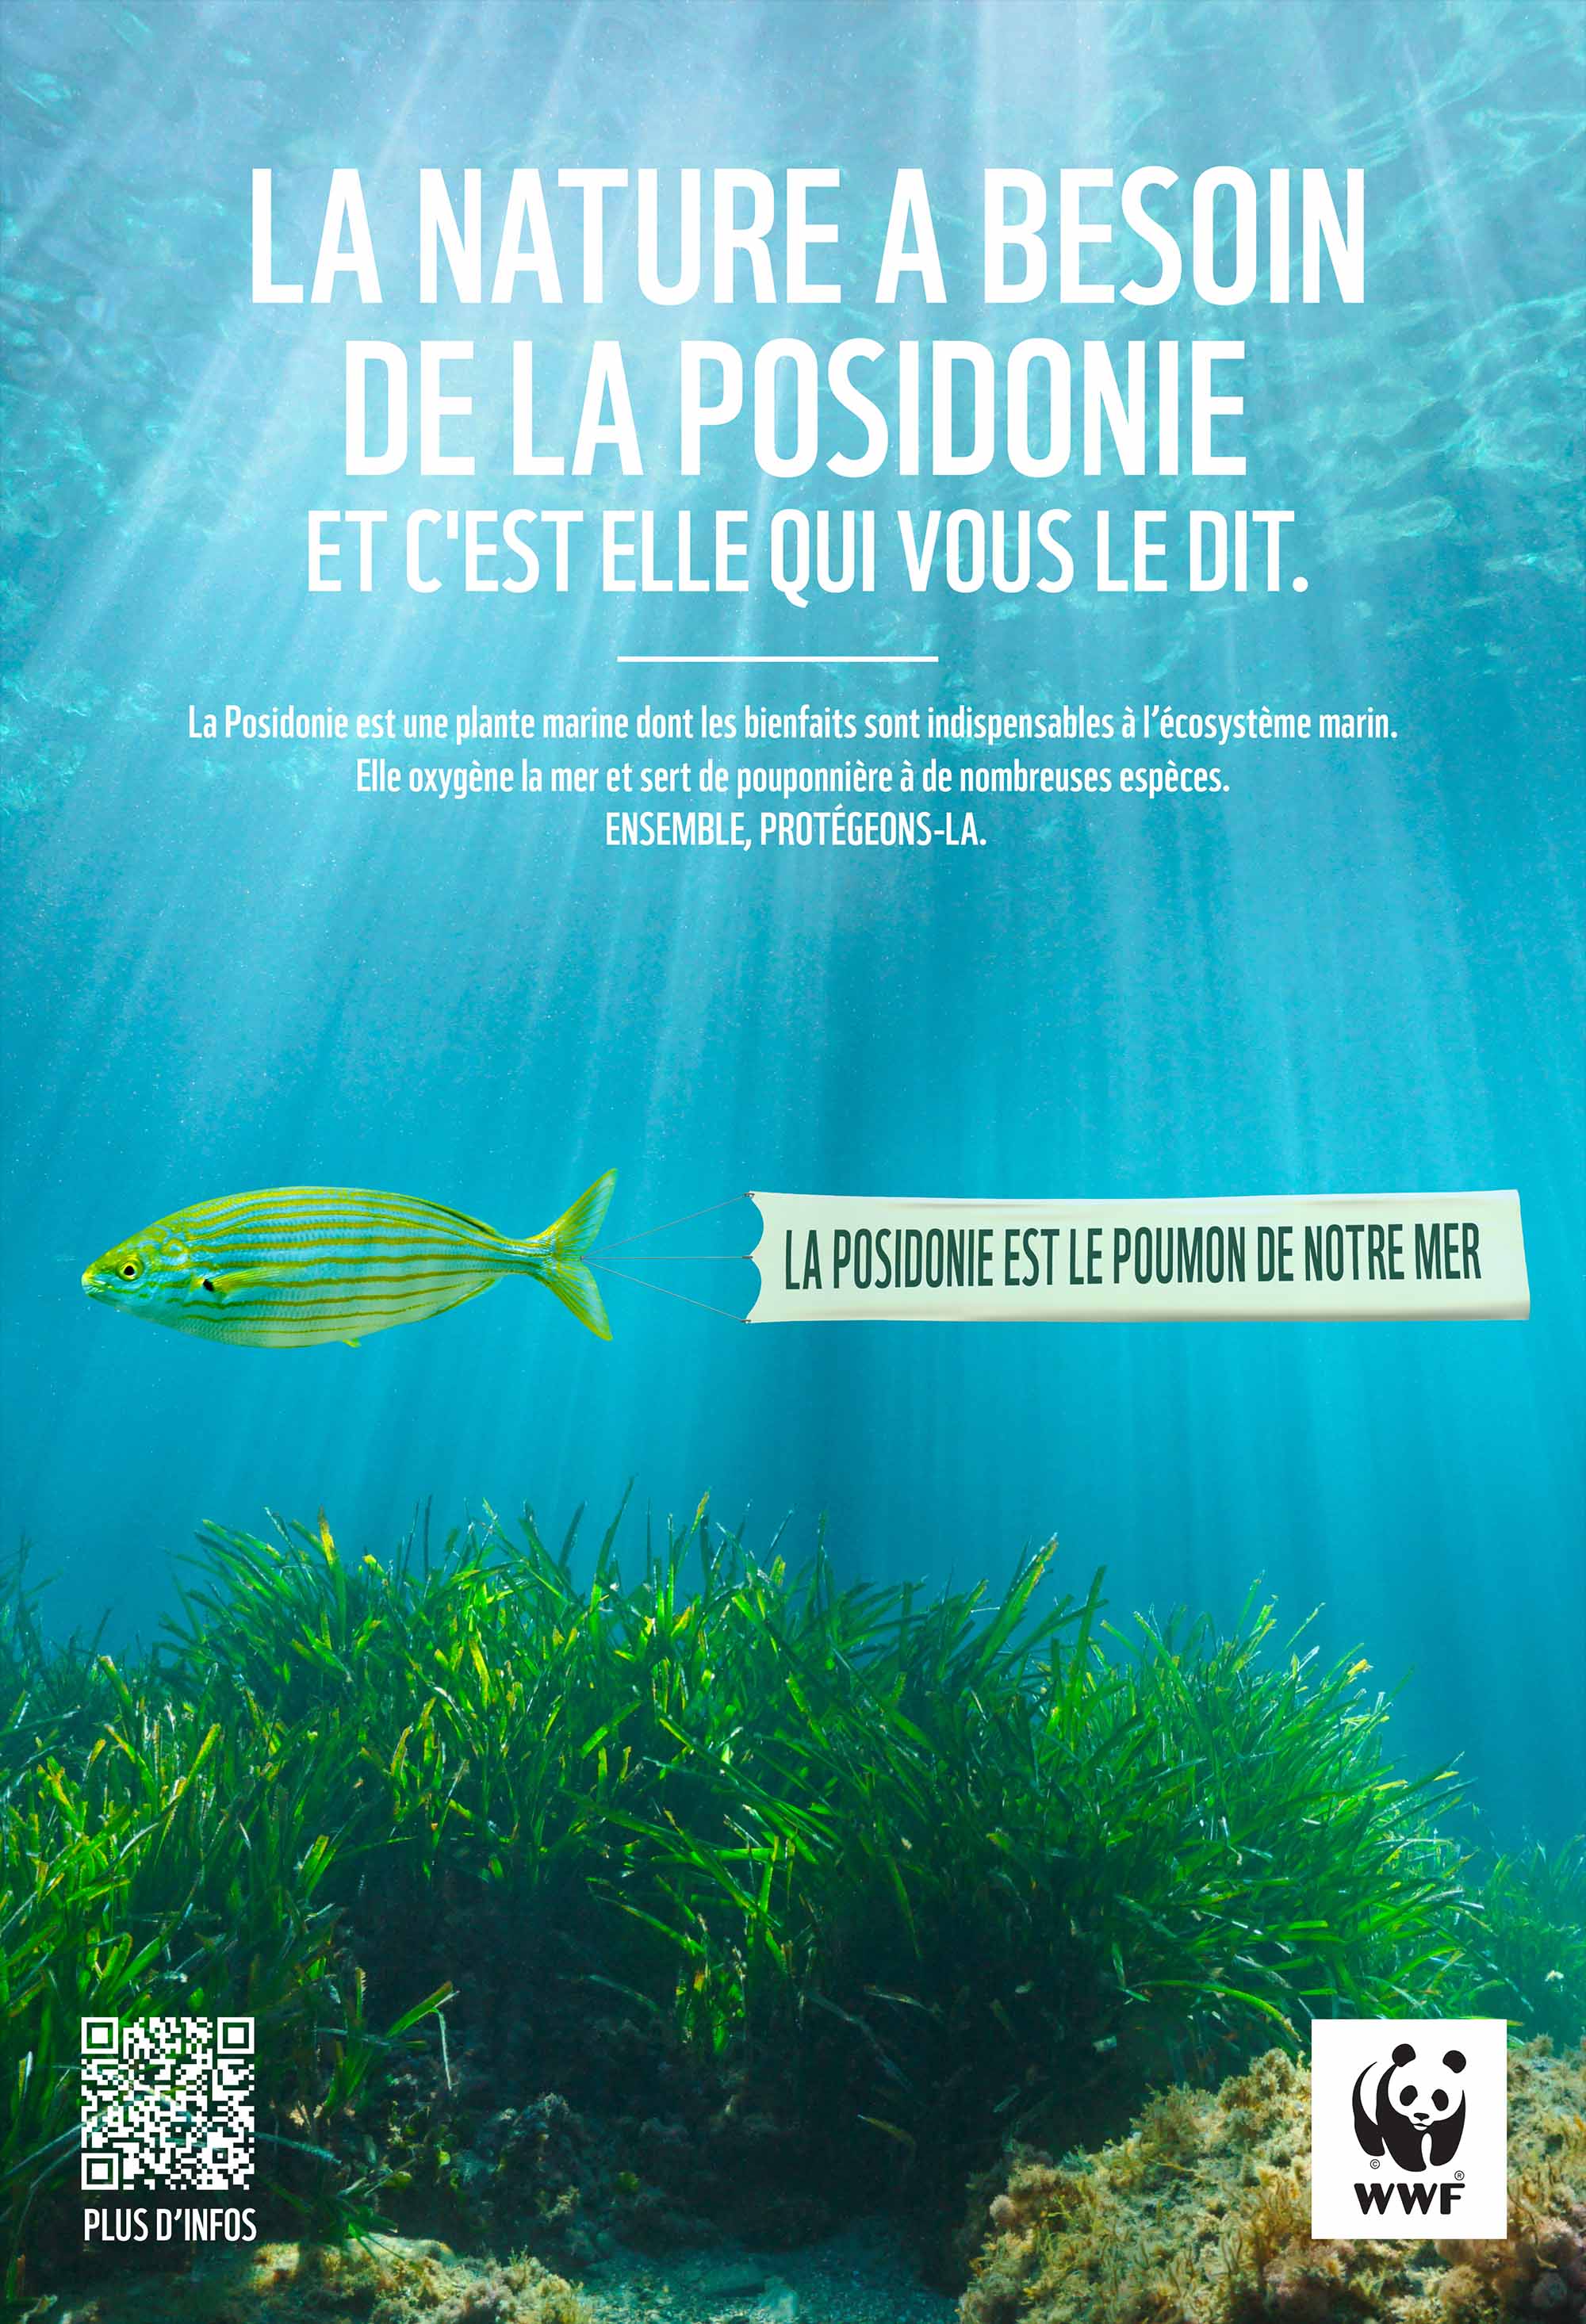 Visuel de la campagne de communication WWF France sur la posidonie